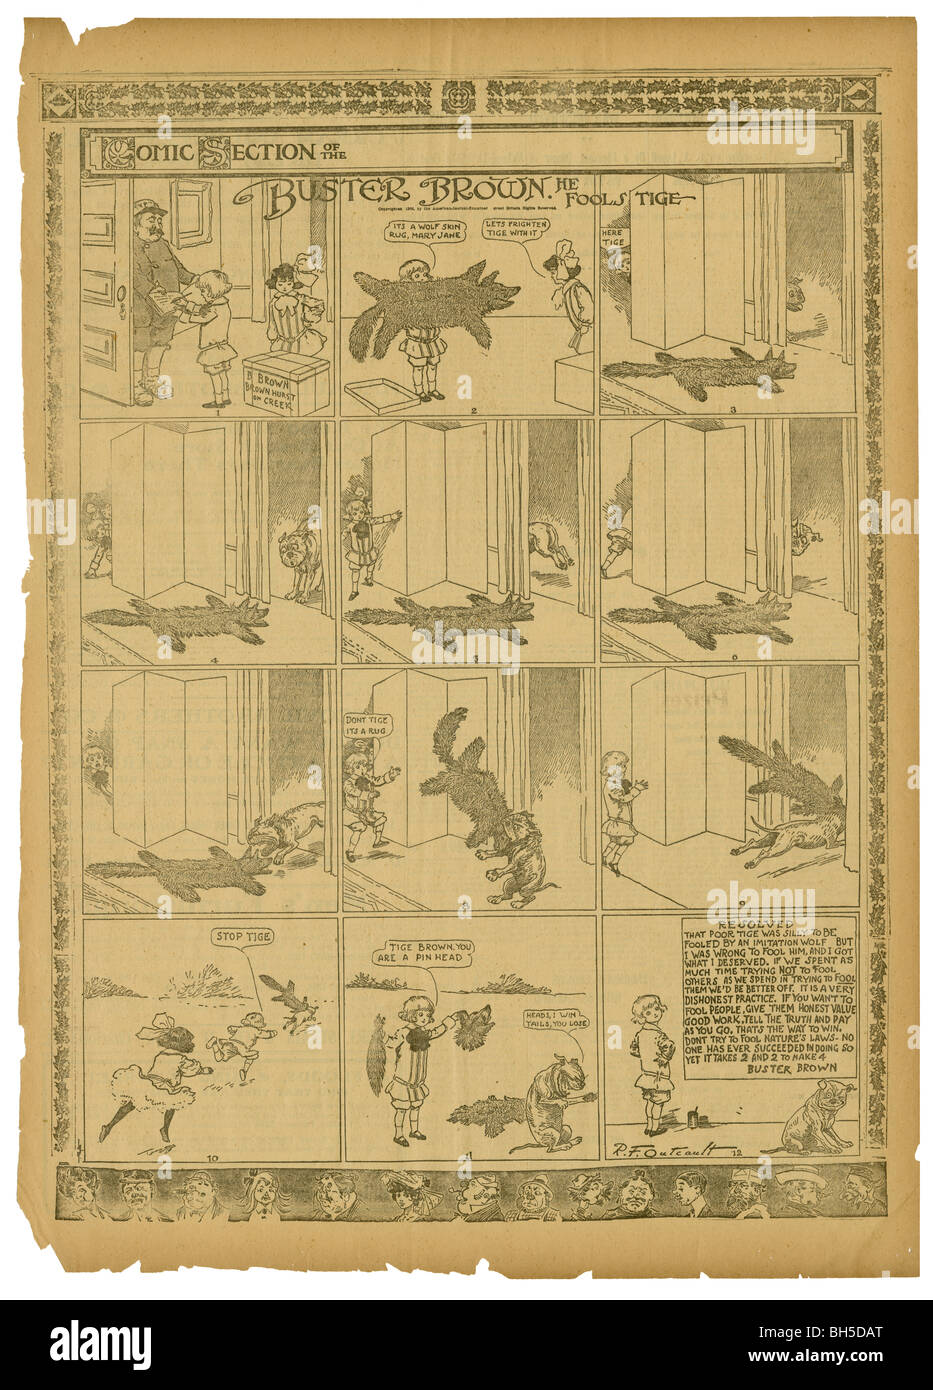 1906 pagina comics, Buster Brown da R.F. Outcault. Buster e Mary Jane utilizzato un lupo pelle rug per ingannare il loro cane, tige. Foto Stock